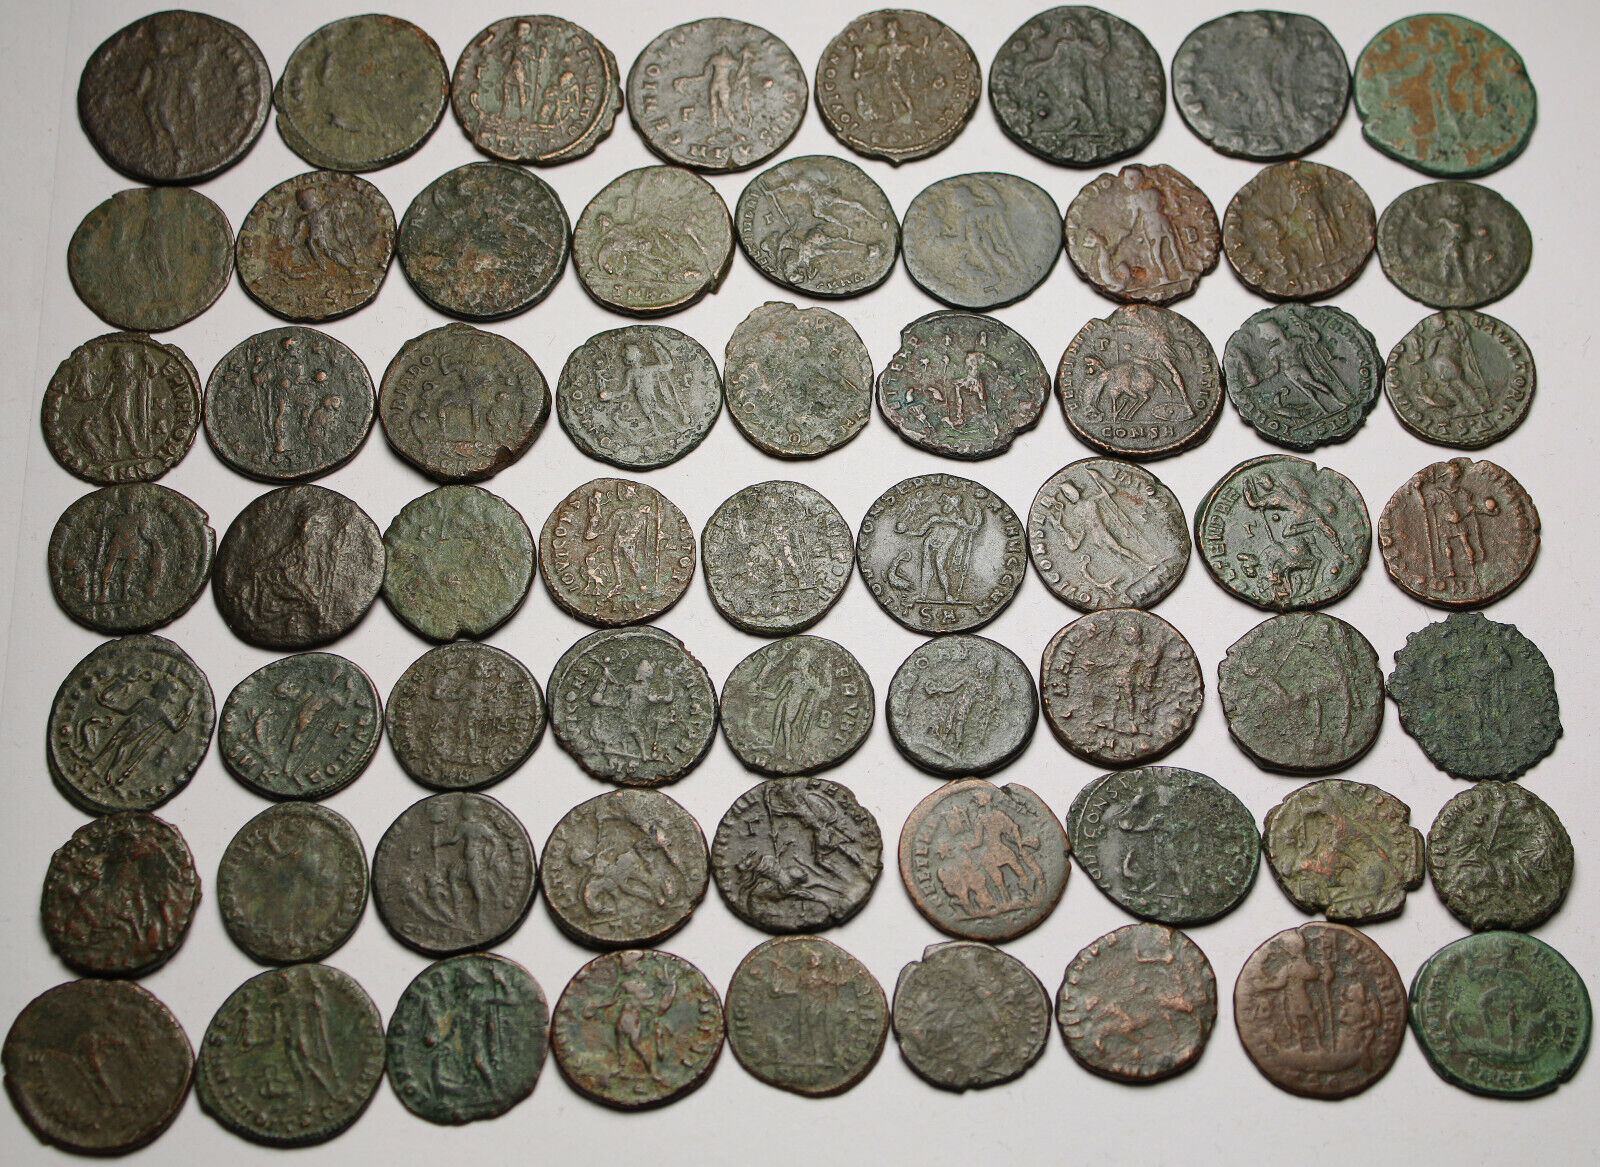 Lot of 3 large coins Rare original Ancient Roman Constantius Licinius Maximianus Без бренда - фотография #7